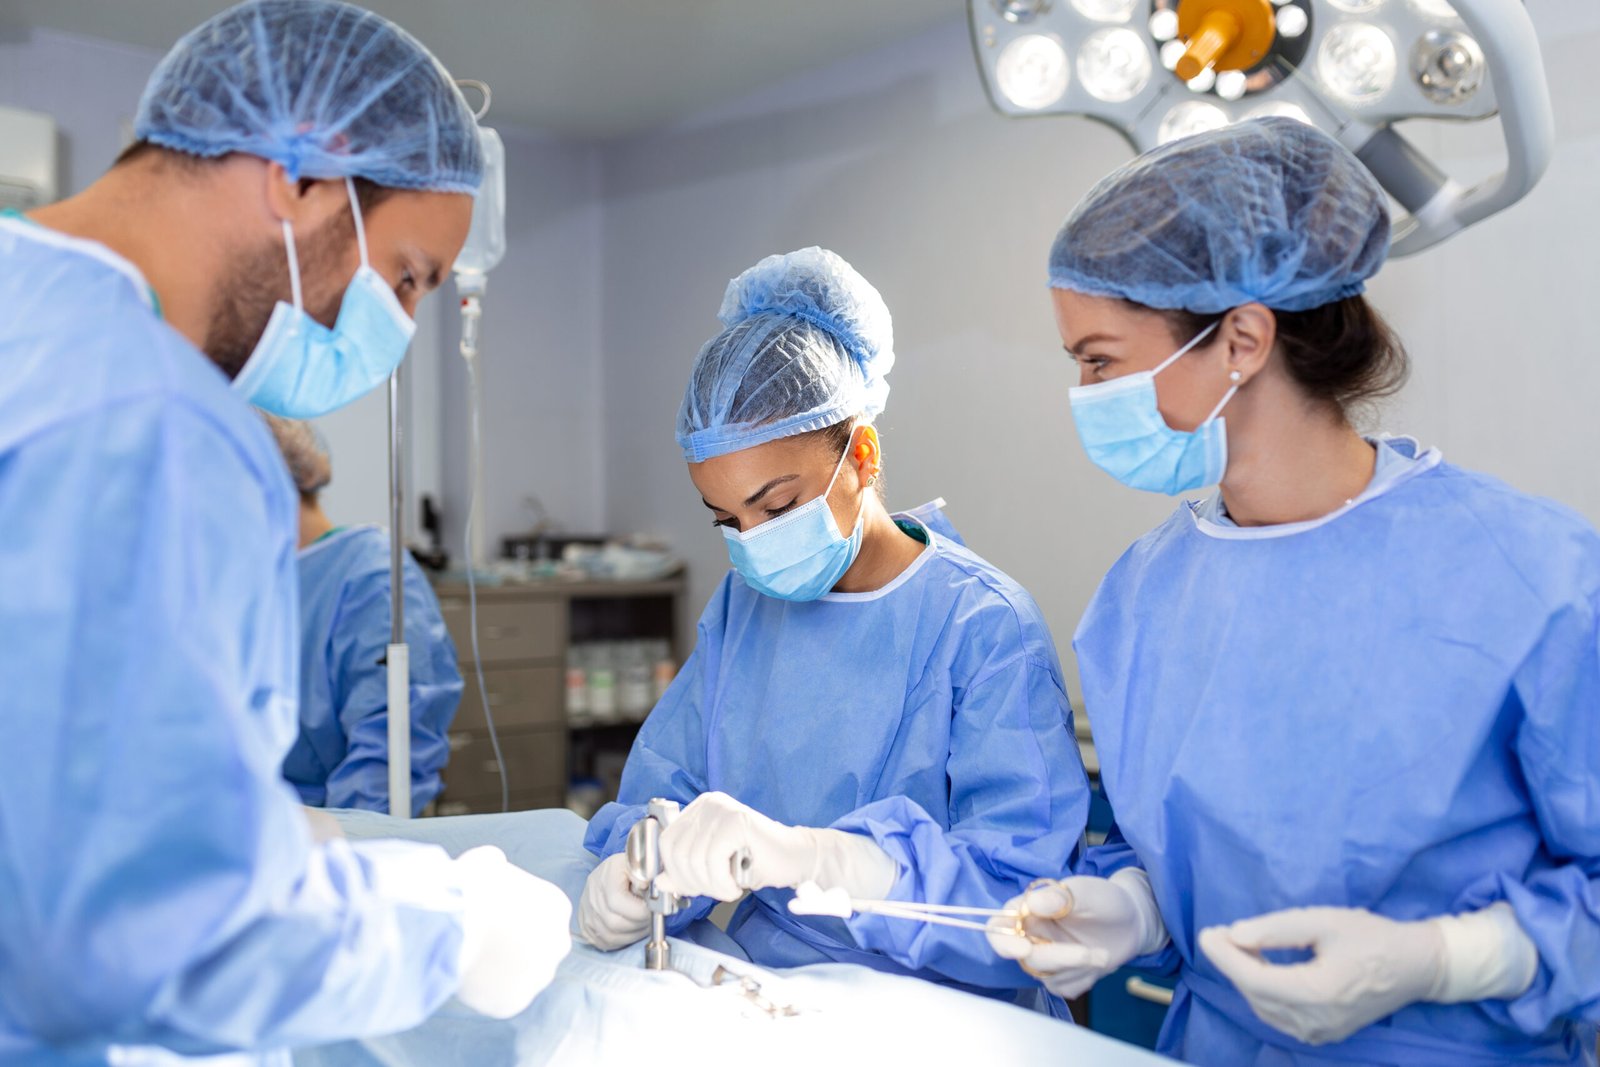 Fotografia de neurologistas realizando uma cirurgia como tratamento para hérnia de disco.